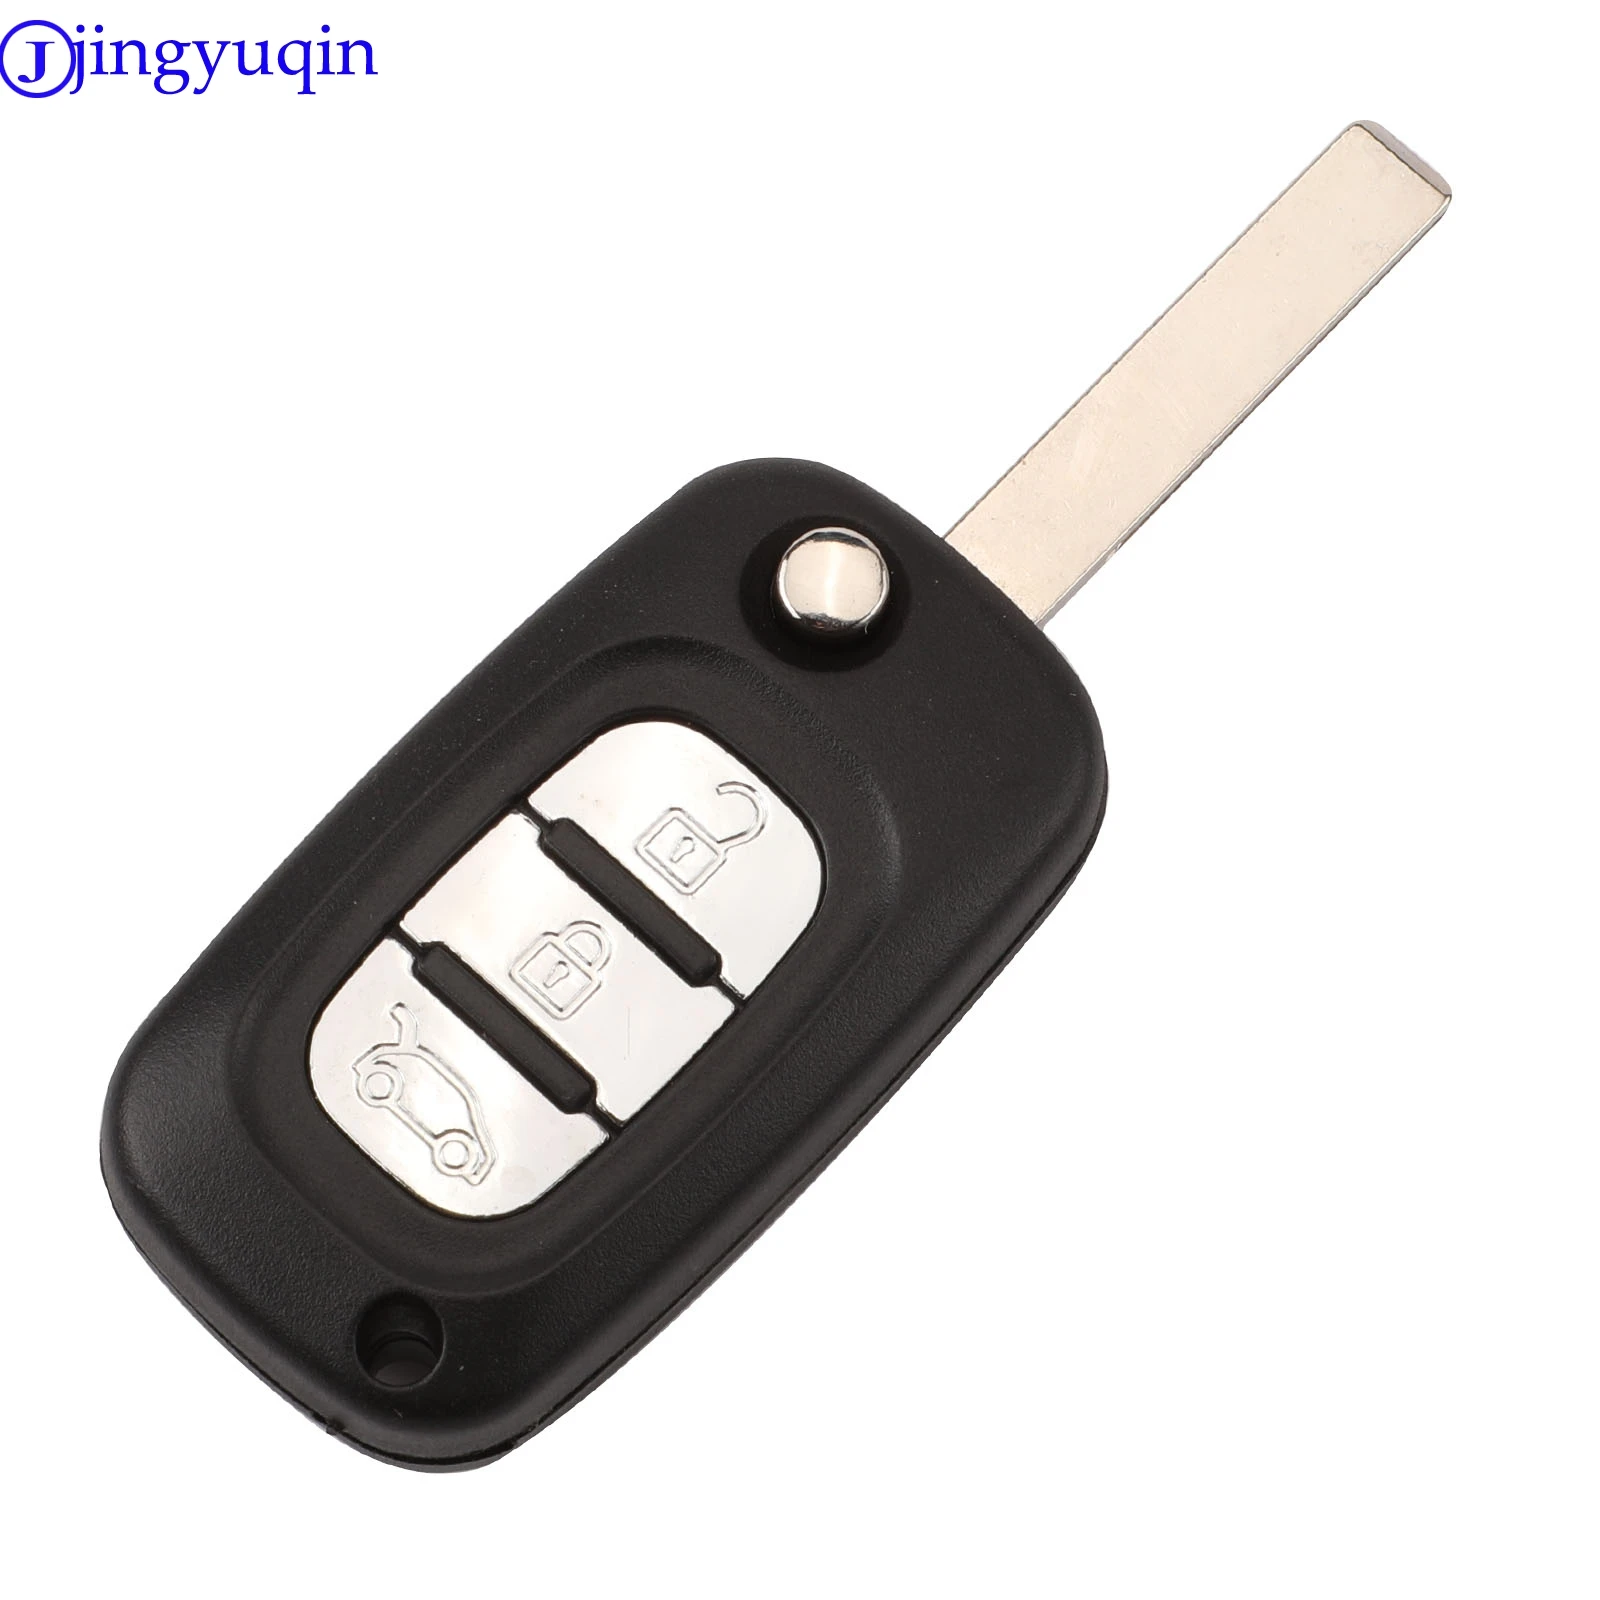 Jingyuqin 10 p, 2 кнопки, чехол для автомобильного ключа, пульт дистанционного управления, откидной складной Автомобильный ключ, оболочка для Renault Clio Megane Kangoo Modus